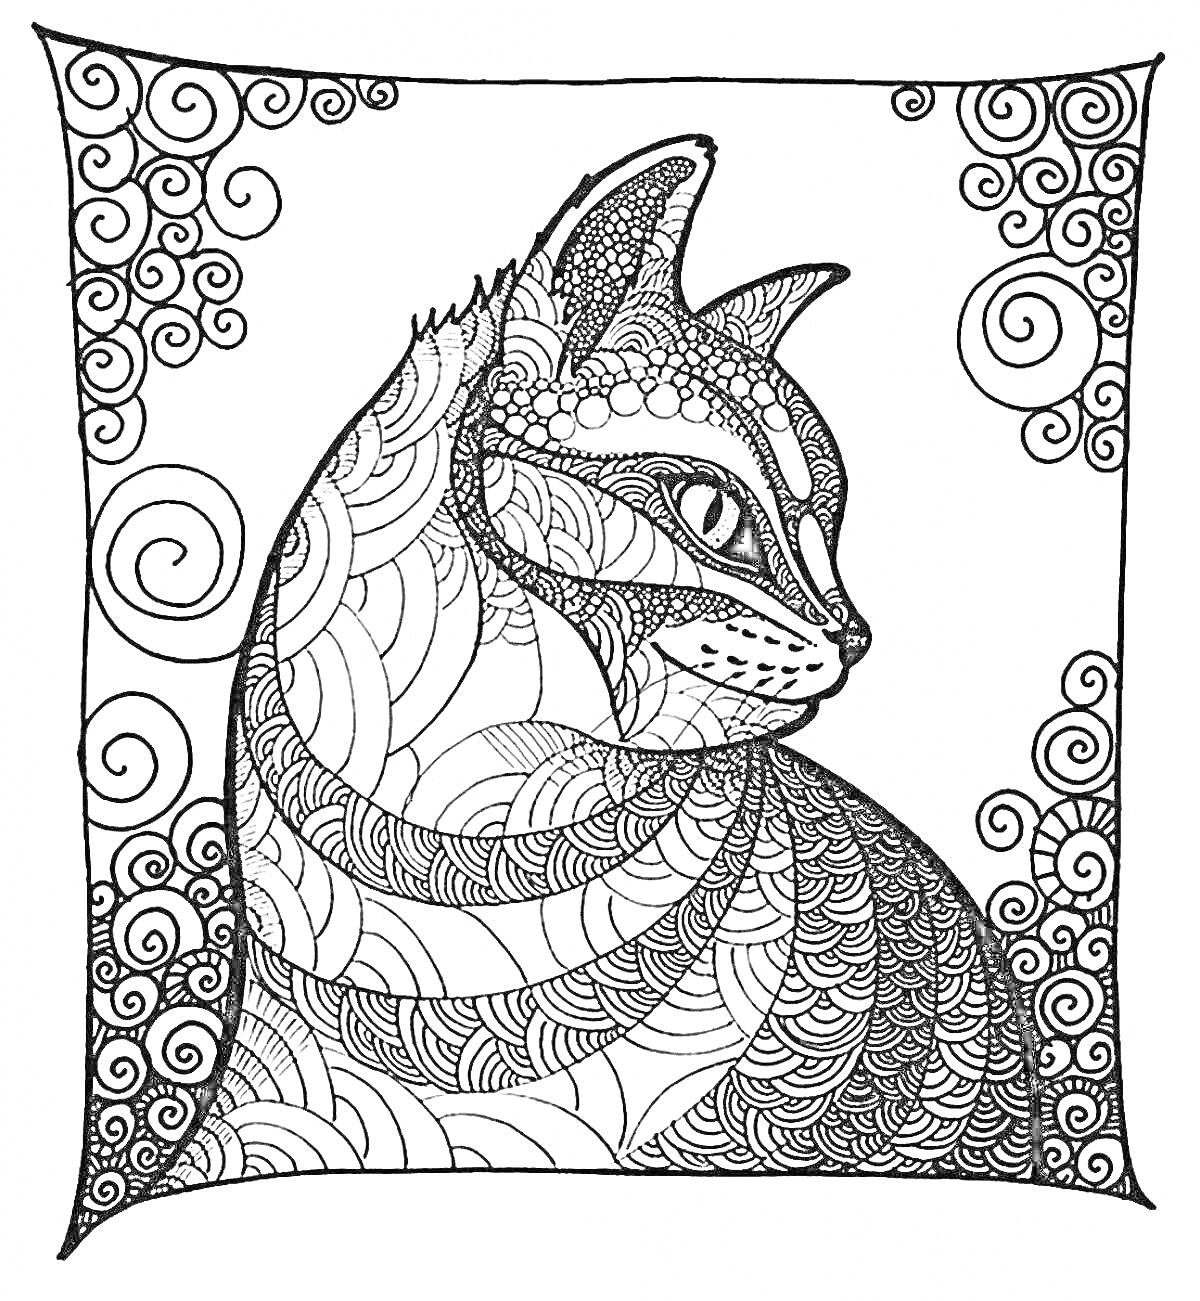 Раскраска Кот с узорчатой шерстью в рамке с завитками